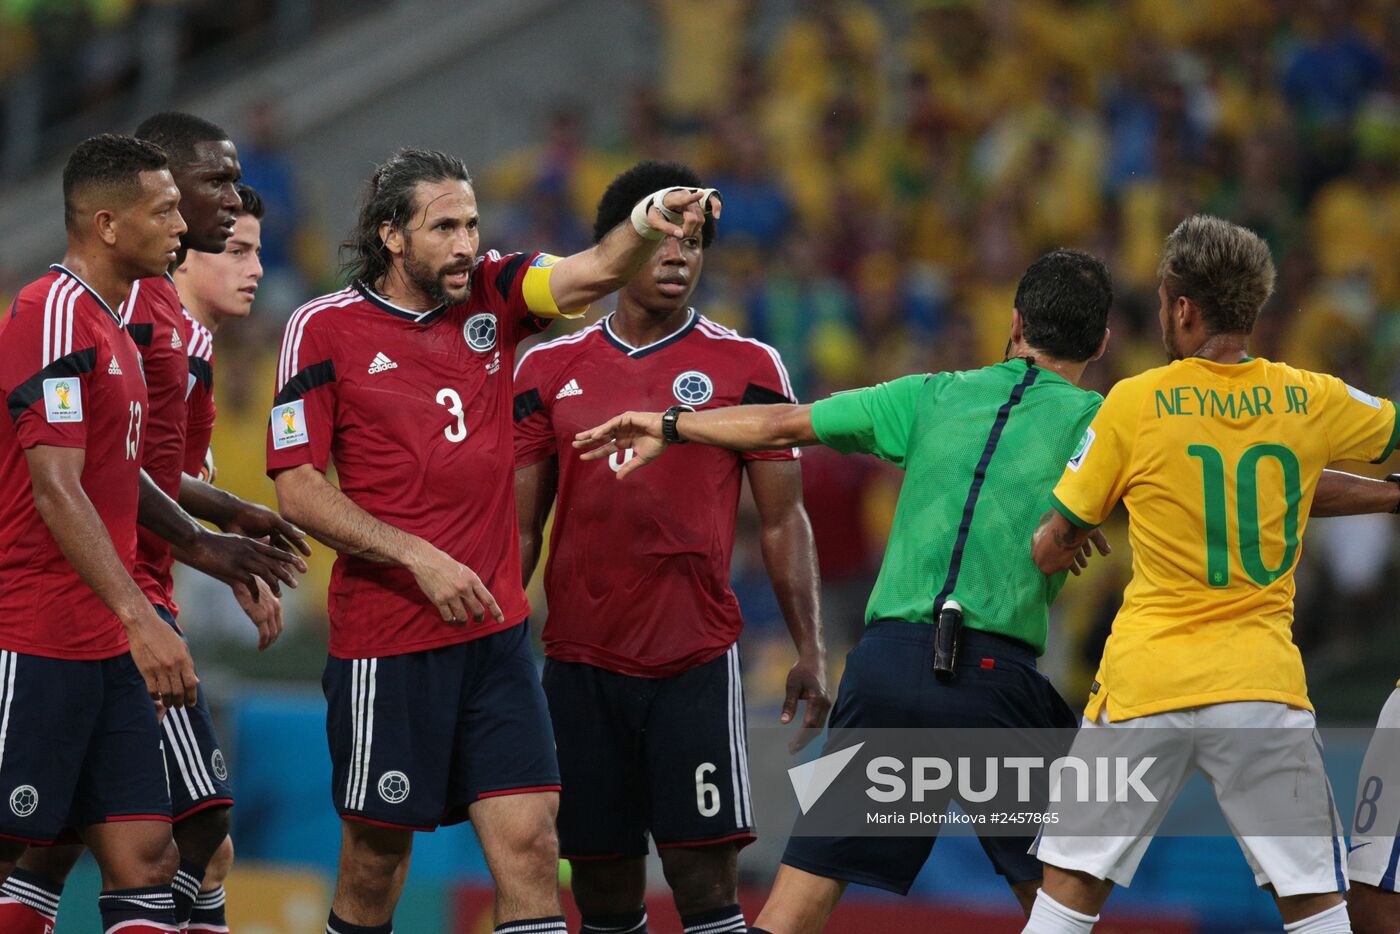 FIFA World Cup 2014. Brazil vs. Colombia